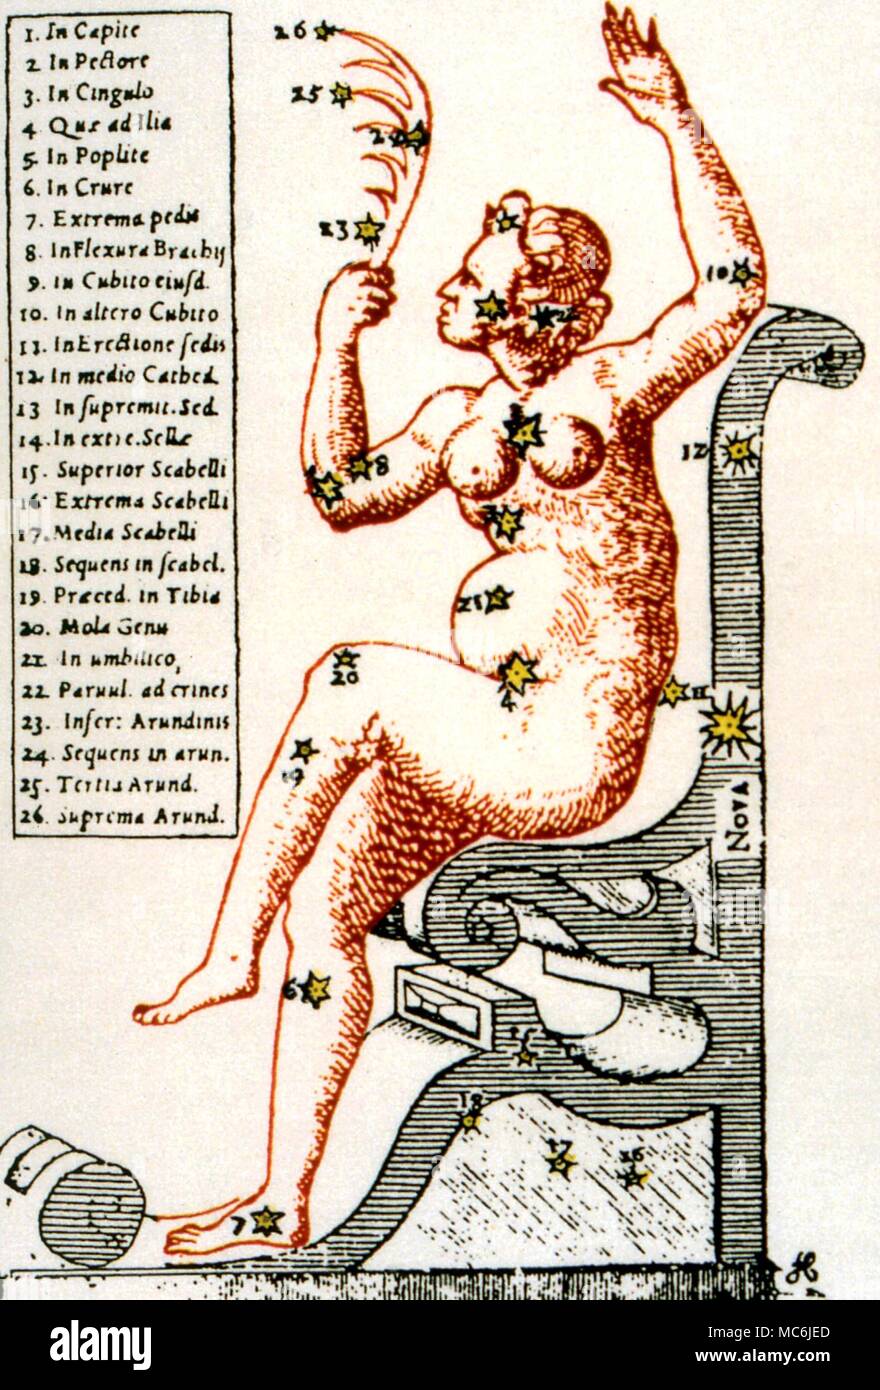 NOSTRADAMUS - - Predicción de NOVA. En la cuarteta 2:41 (publicado en 1555), Nostradamus predijo la Nova o nueva estrella, de 1572. La Nova apareció en la constelación de Cassiopeia, situado en la parte posterior de la silla. La ilustración es de Tycho Brahe, Astronomiae Instauratae Progymnasmata, 1602 Foto de stock